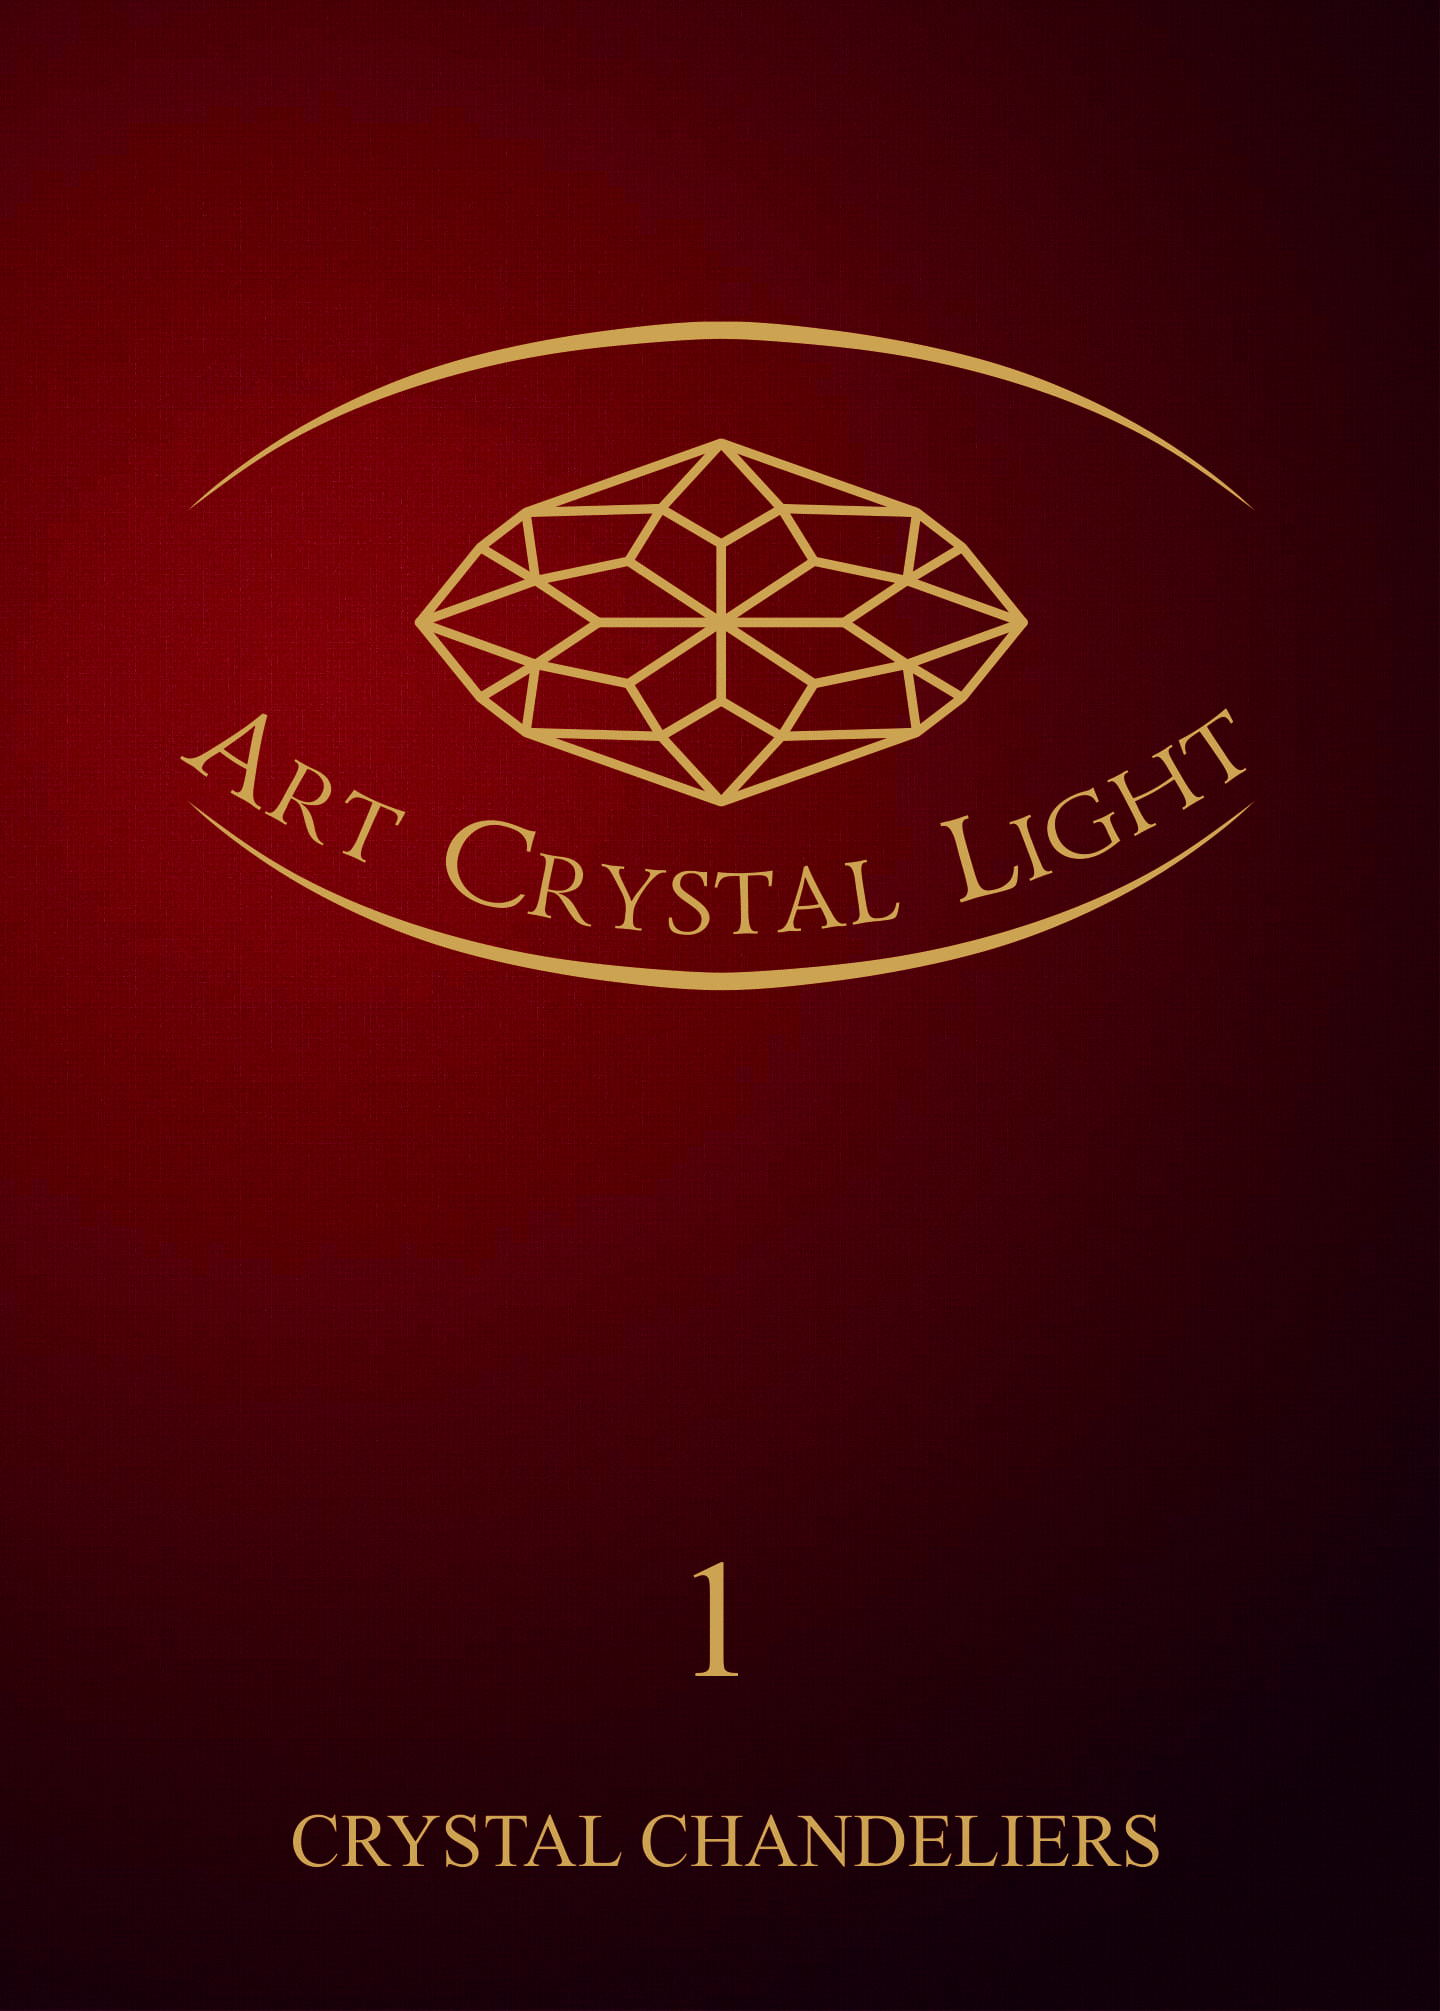 Каталог хрустальных светильников Art Crystal Light - 1 том.